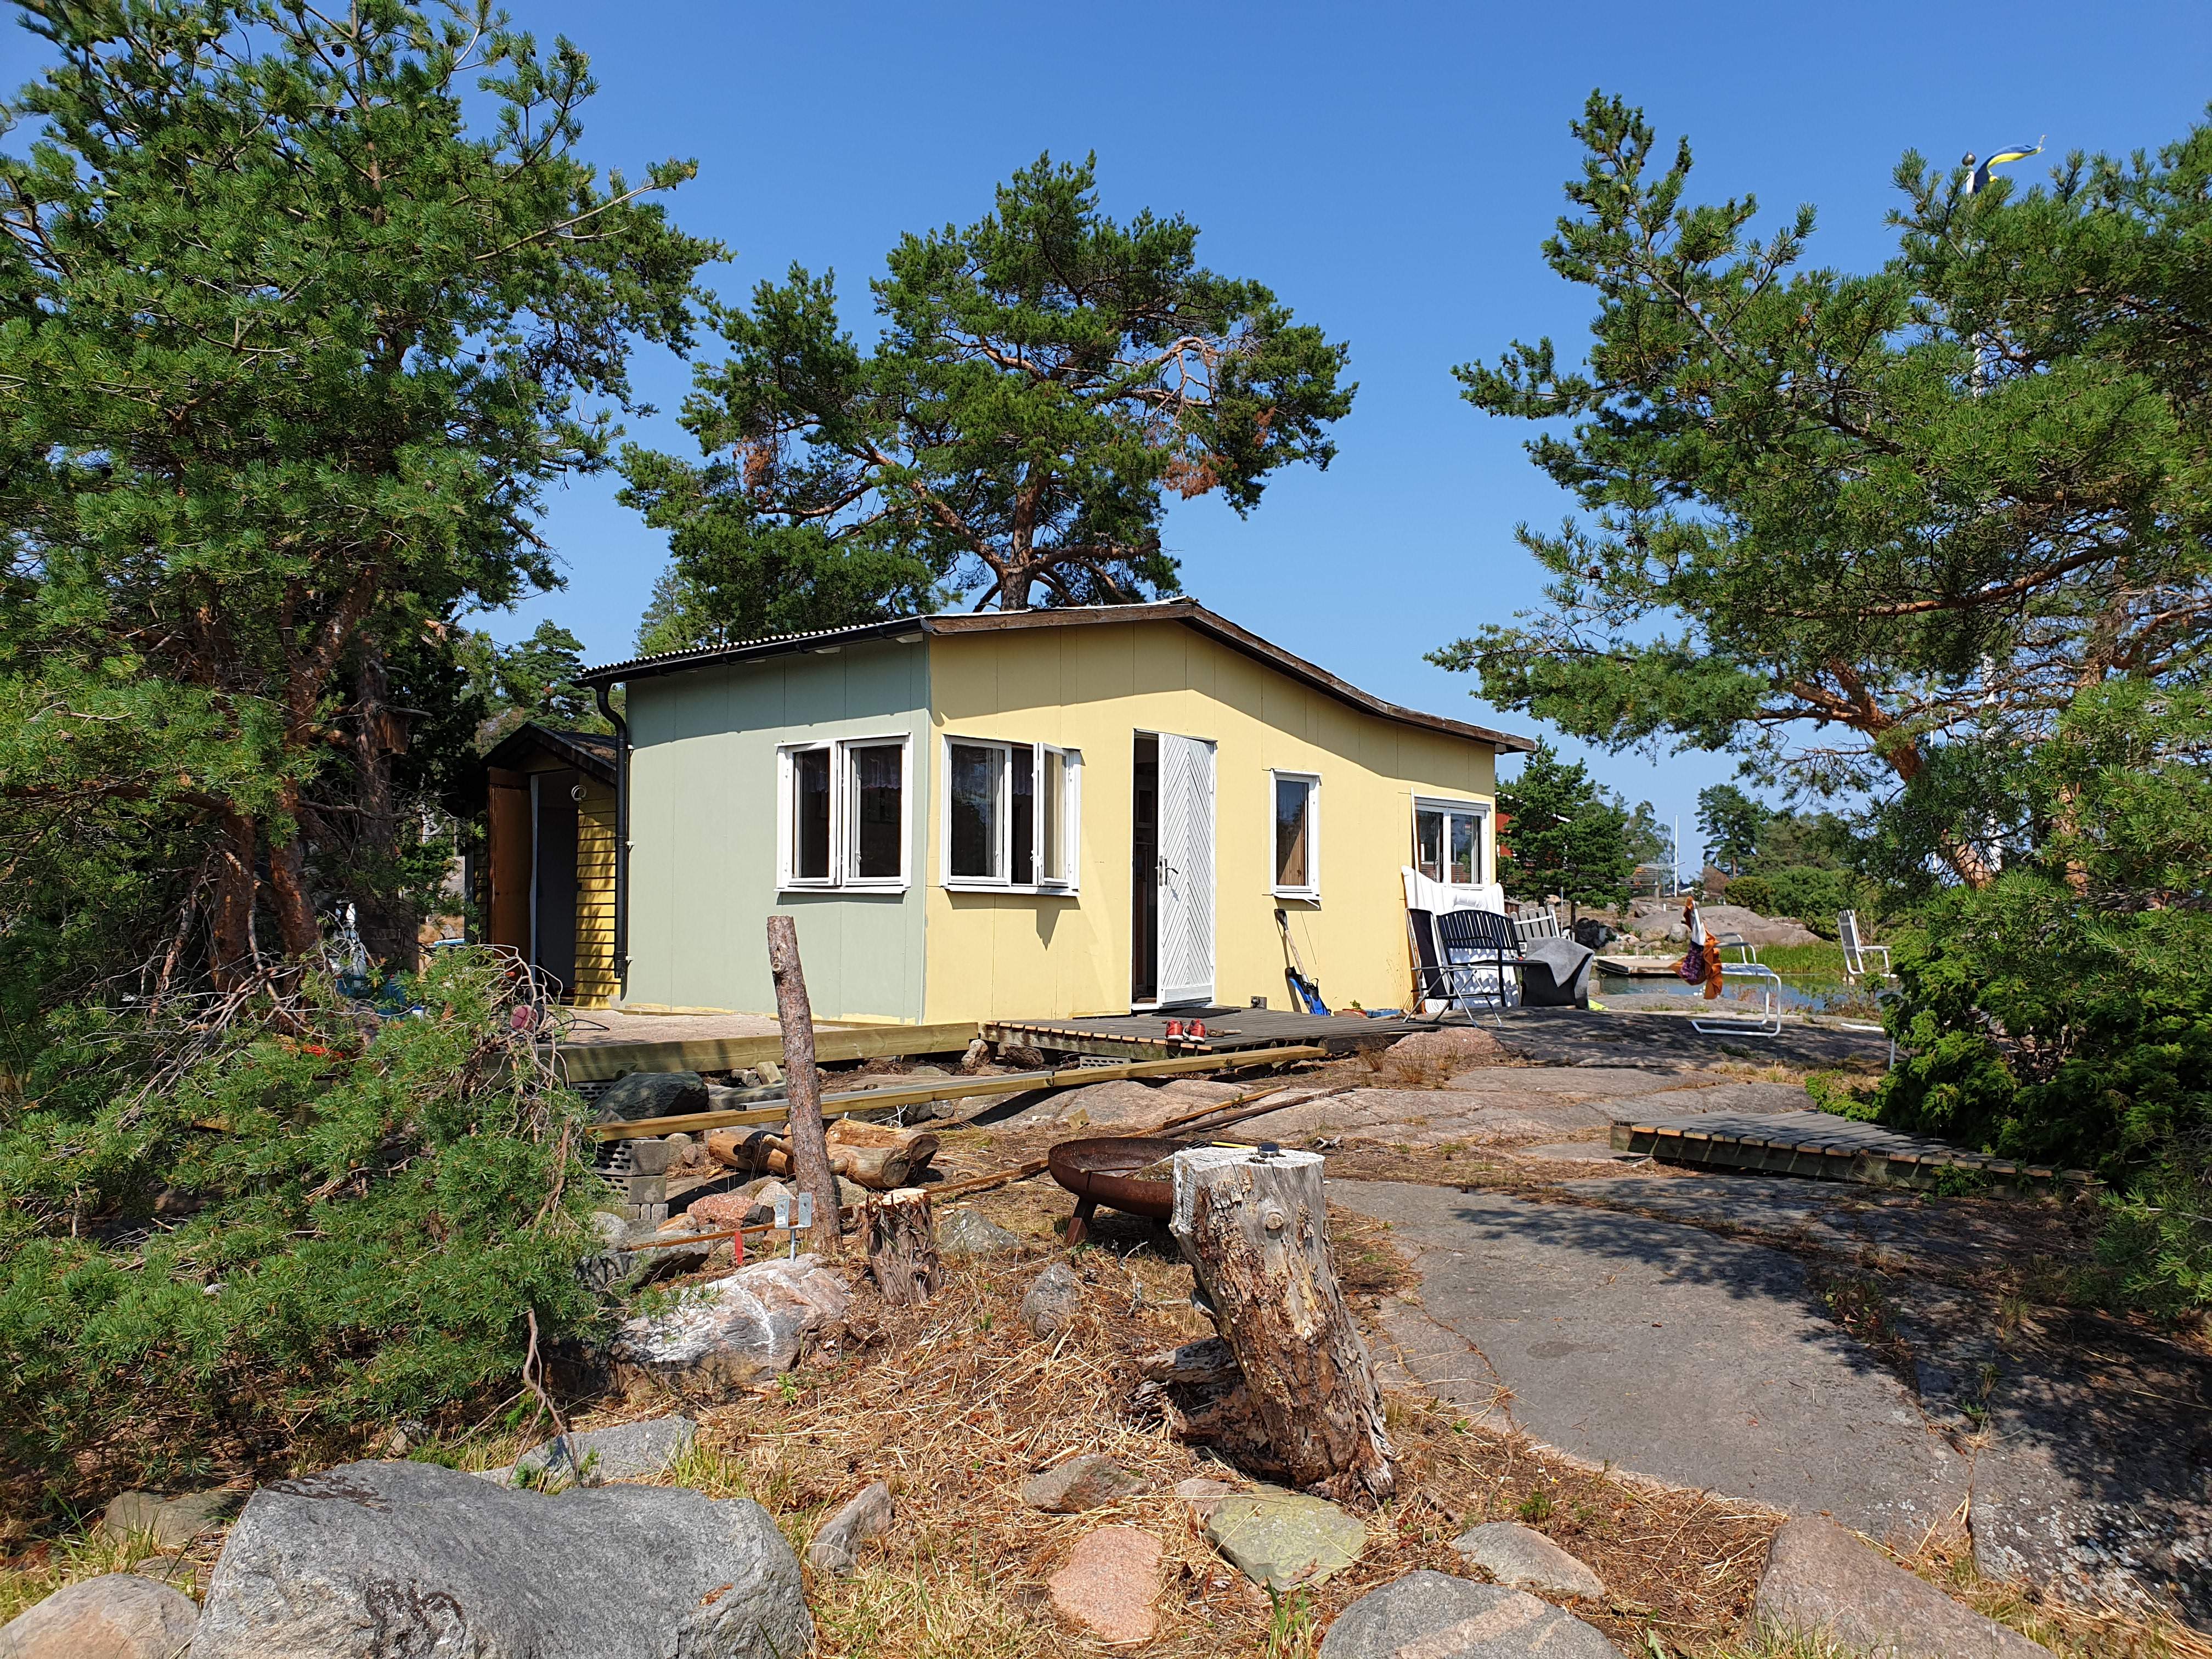 Inför försäljning av bostad i Blekinge, homestyling, homestaging, Karlskrona, byggkonsult, besiktningsanmärkningar, Ronneby